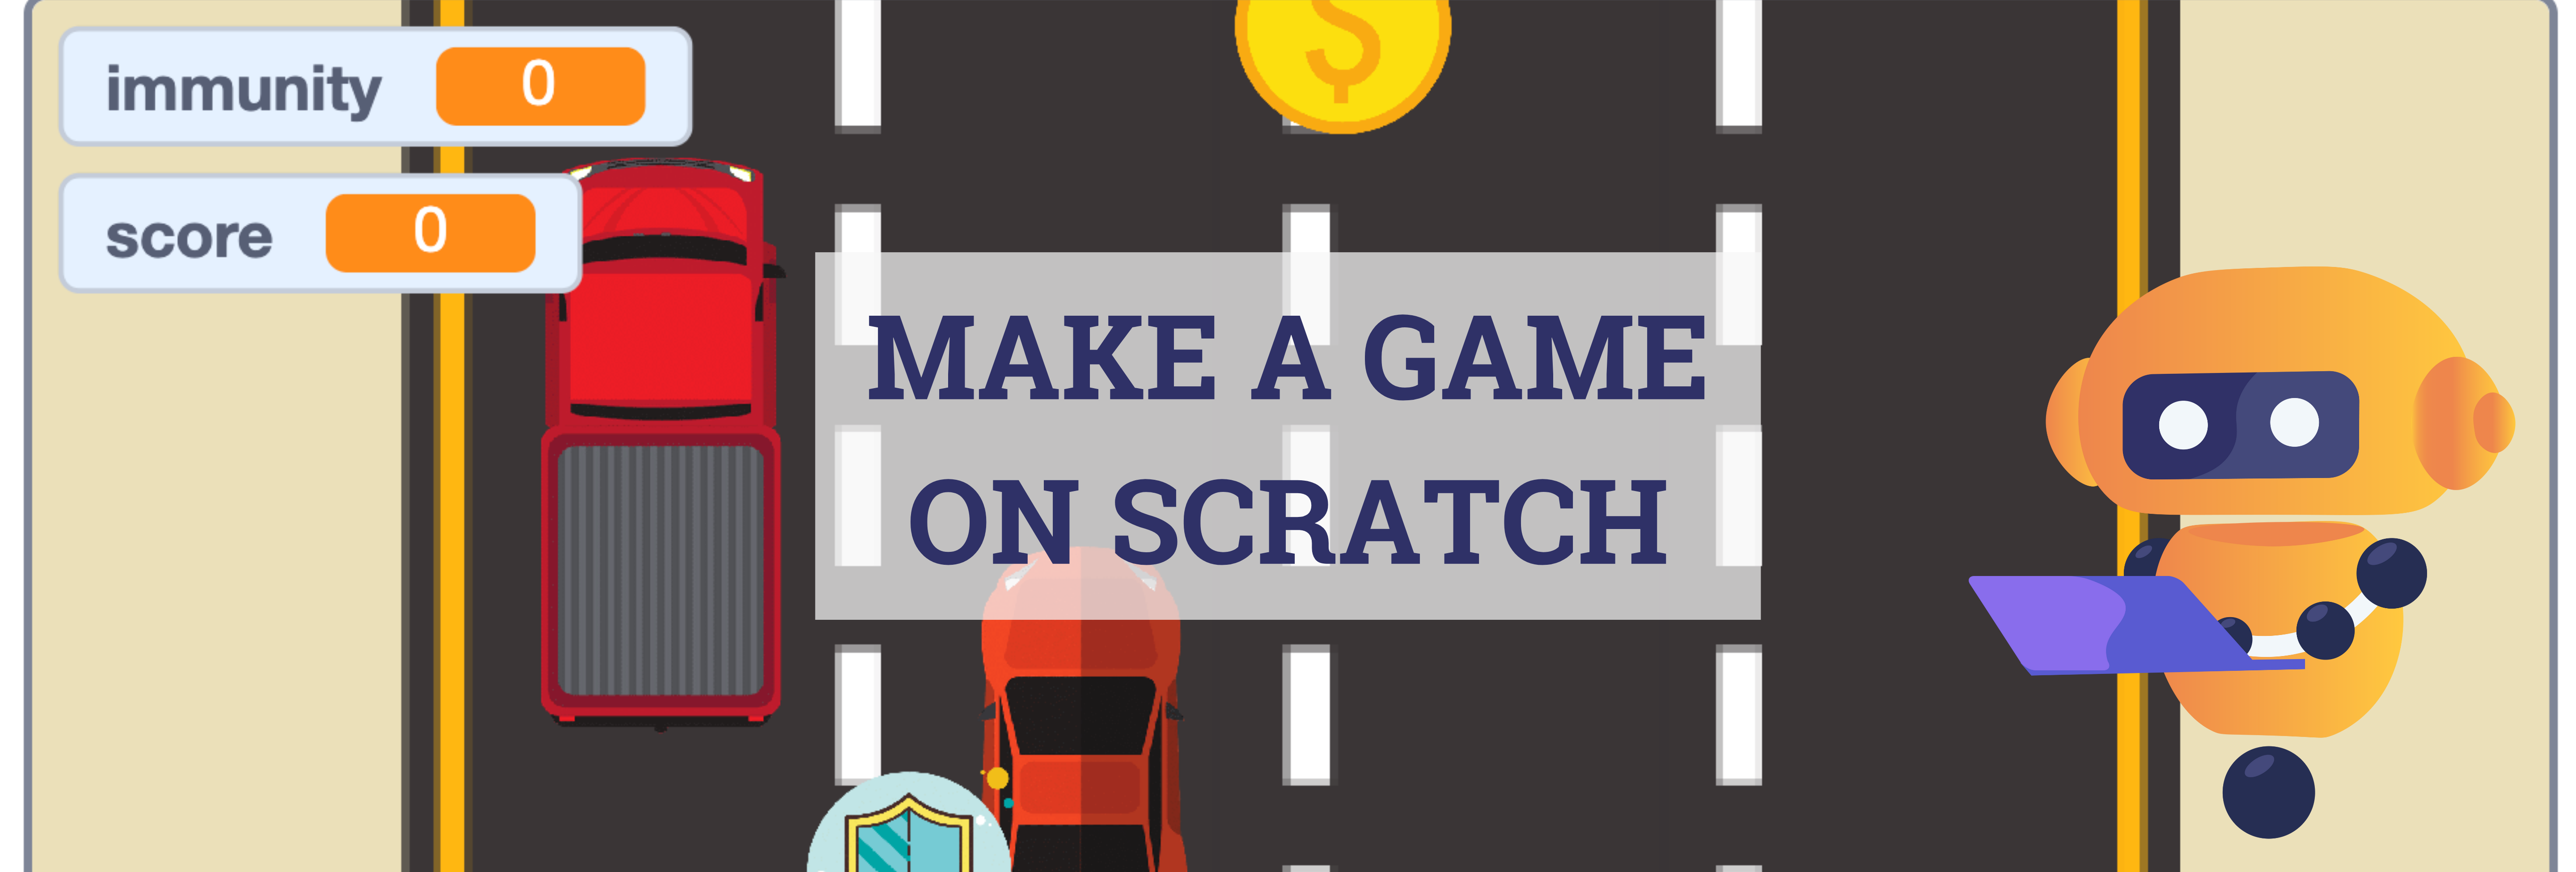 Hãy khám phá thế giới phát triển trò chơi với Scratch và tạo ra trò chơi của riêng bạn! Với Scratch, bạn có thể tạo ra những trò chơi đầy sáng tạo và thú vị mà không cần kiến thức chuyên sâu. Xem hình ảnh để tìm hiểu về những trò chơi được tạo ra bằng Scratch!